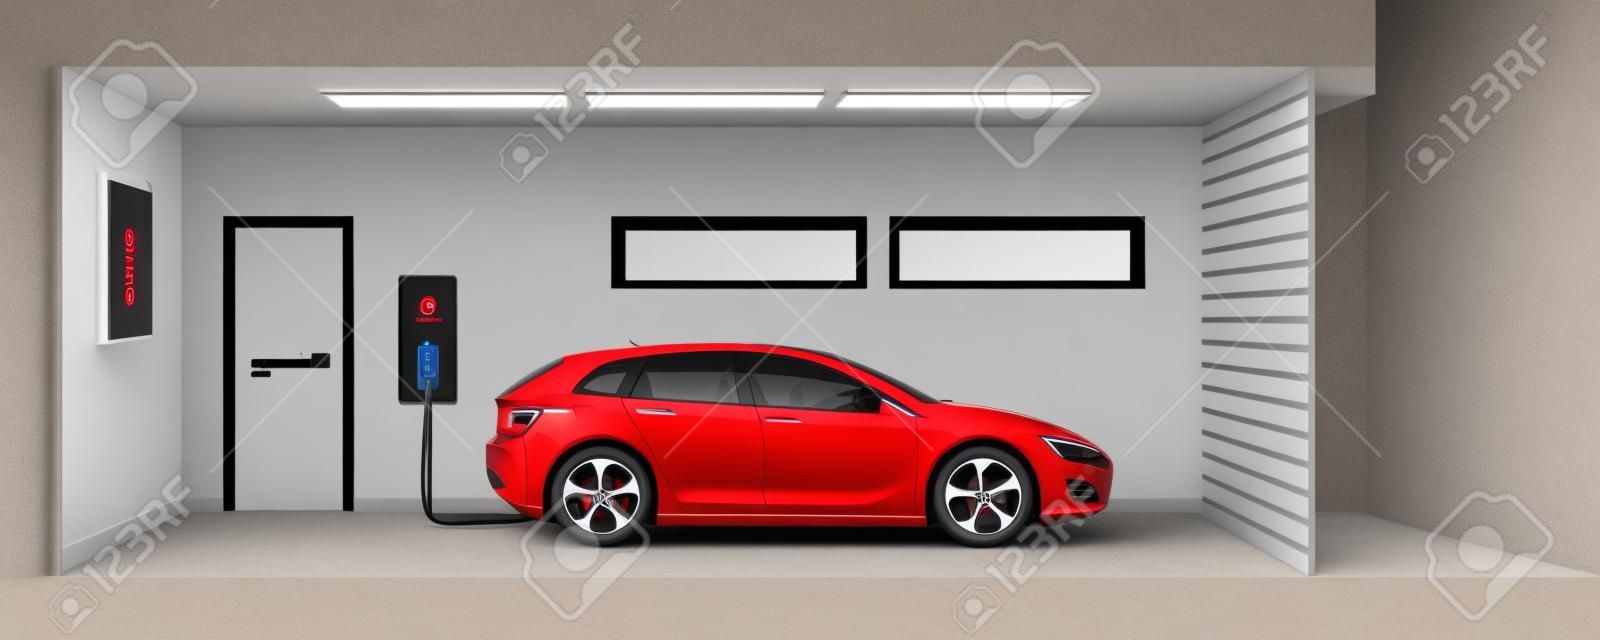 Flache Darstellung eines roten Elektro-Auto Aufladen an der Ladestation Punkt innerhalb Hause Garage. Integrierte intelligente Hauselektromobilität e-motion-Konzept.